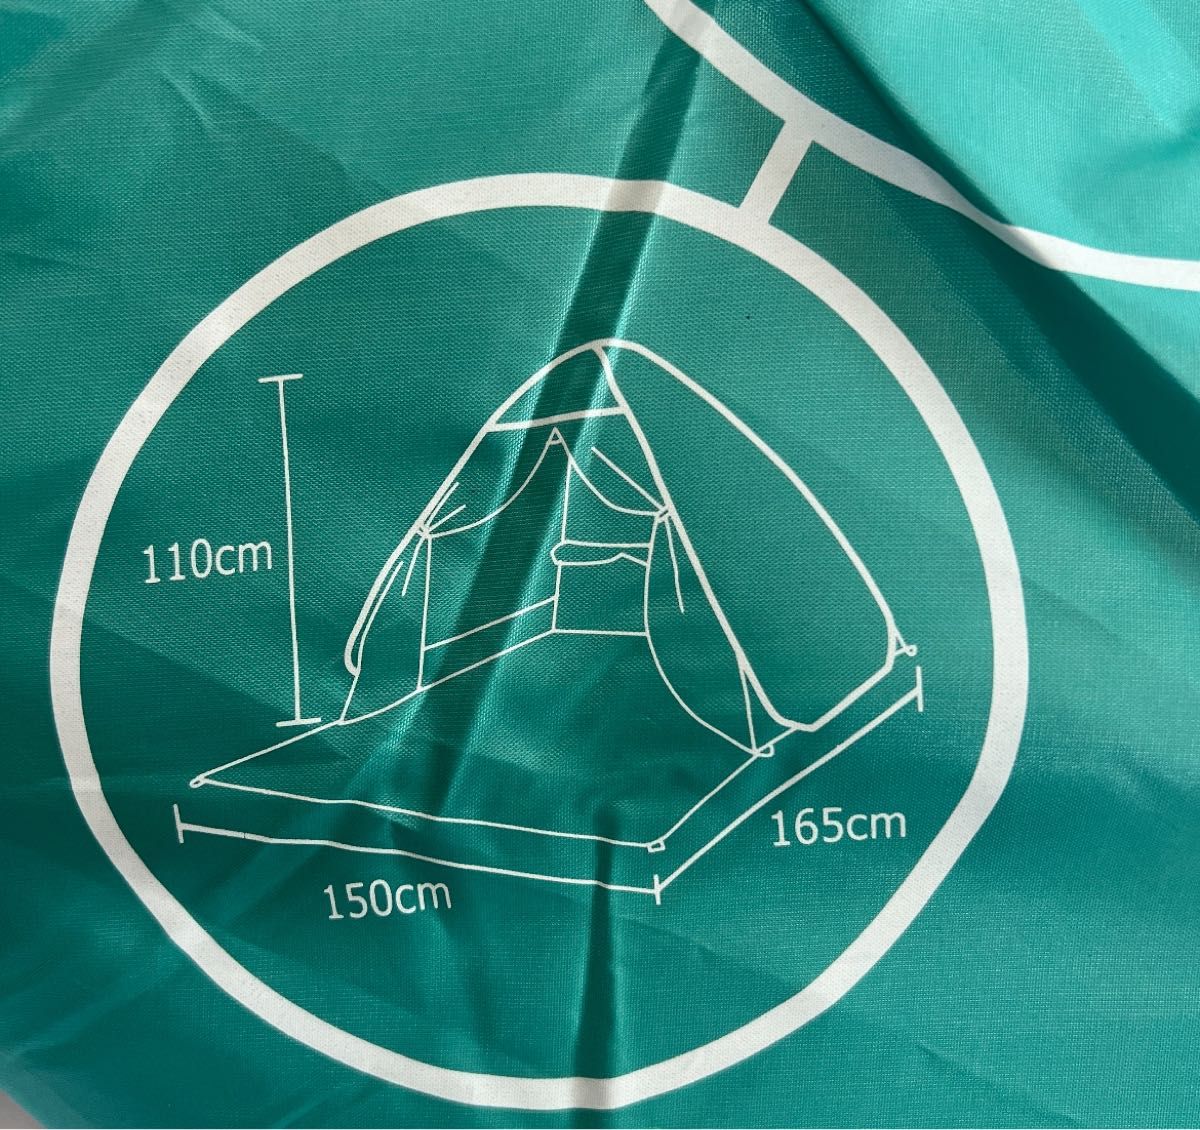 ポップアップテント ワンタッチテント グリーン 緑色　カーテン有り 紫外線対策 人気 